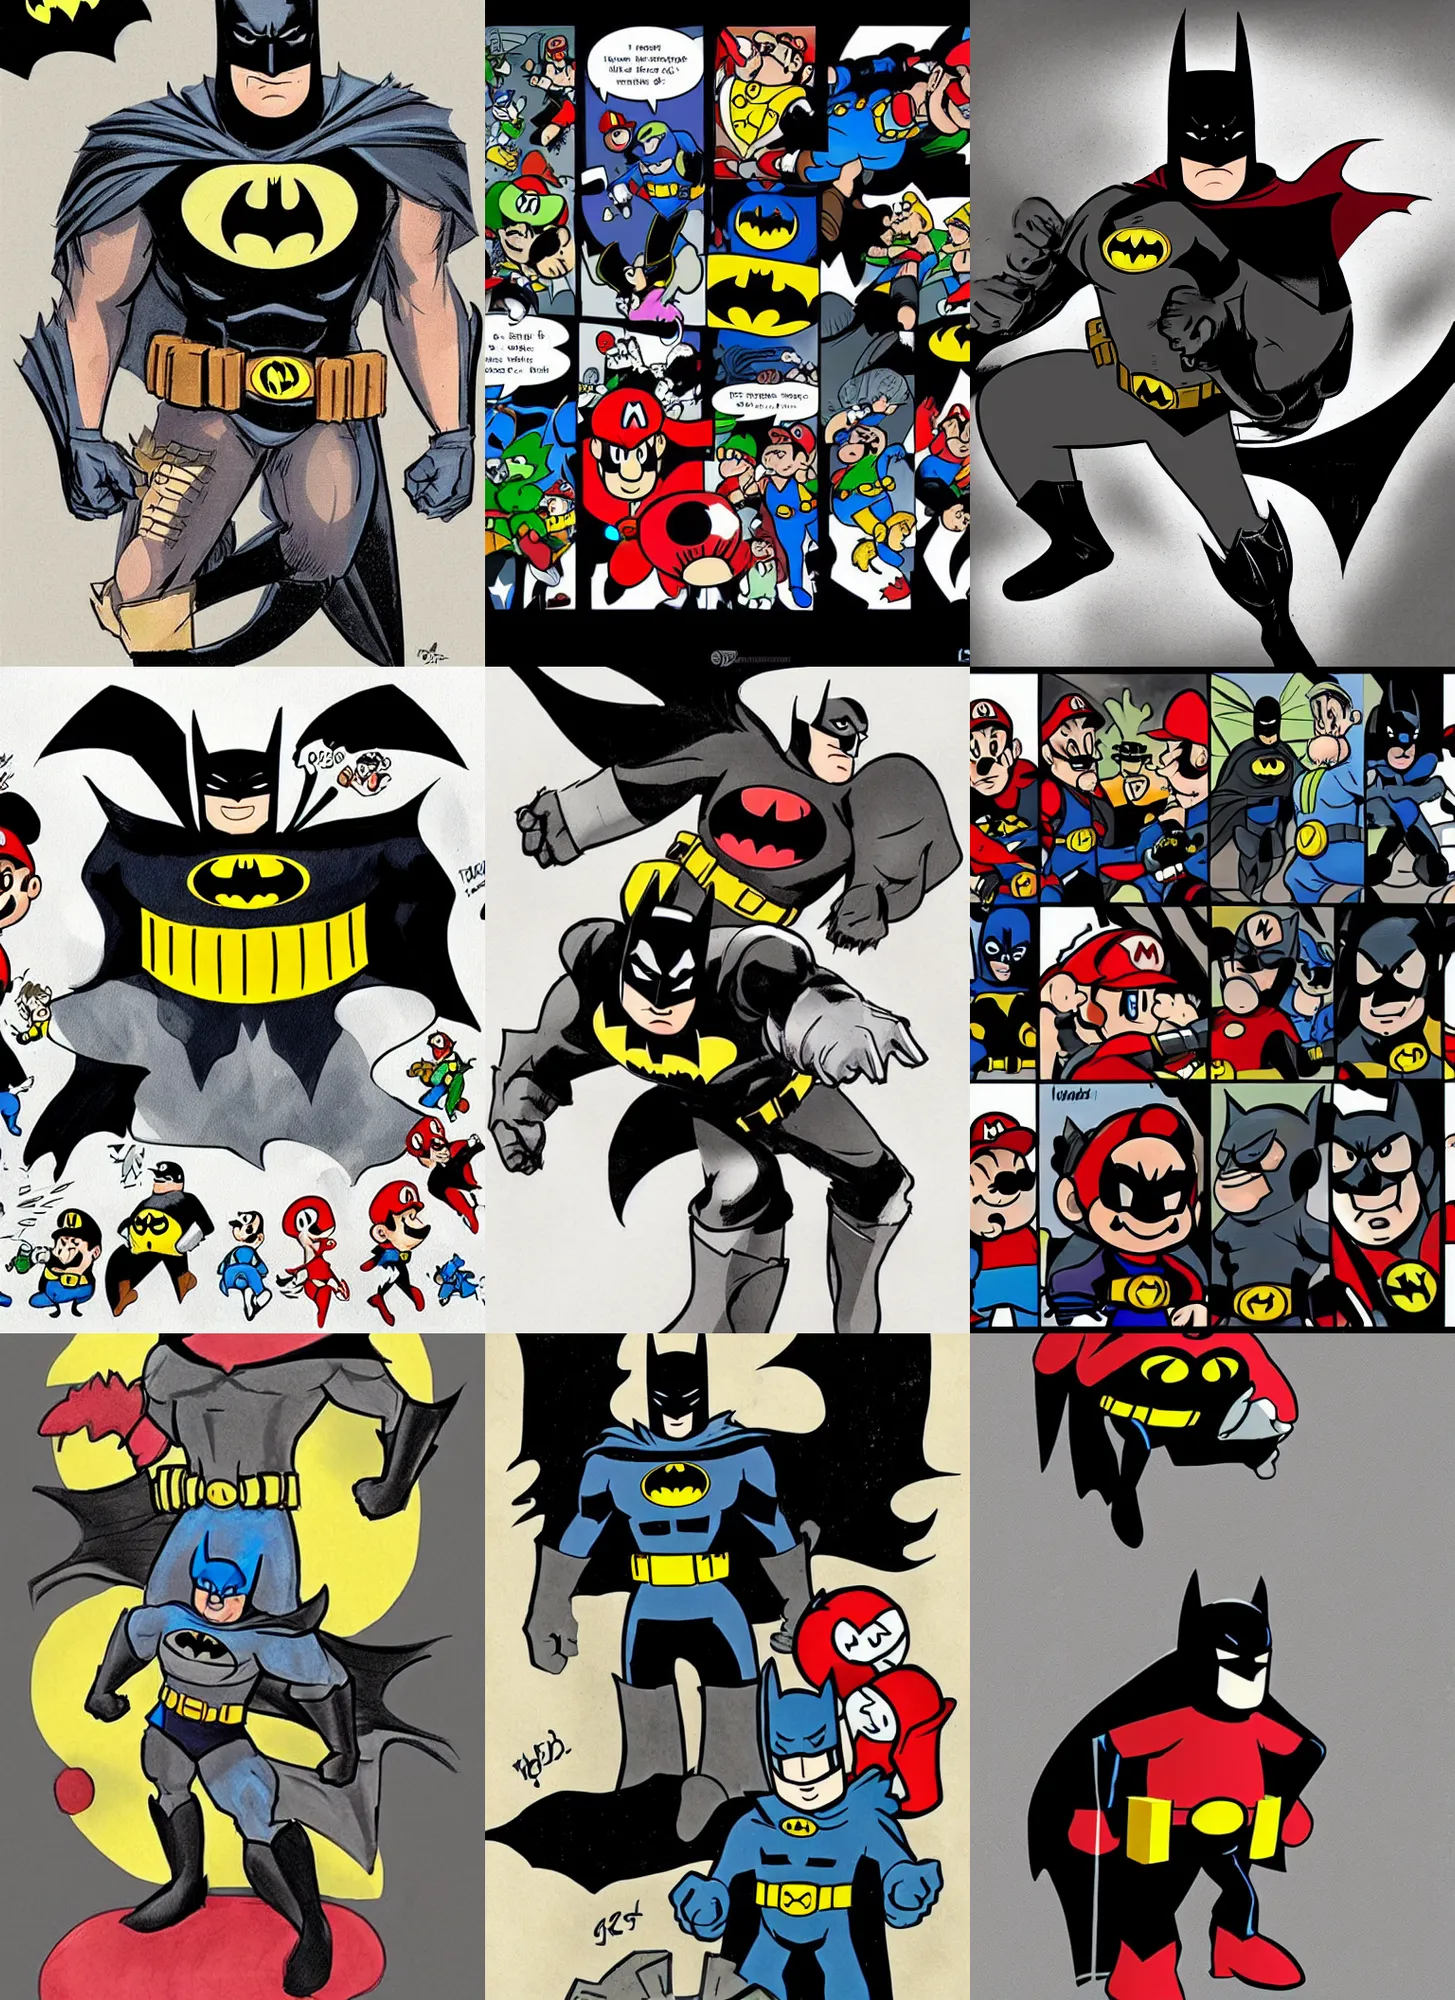 Prompt: batman and mario fusion, comics concept art